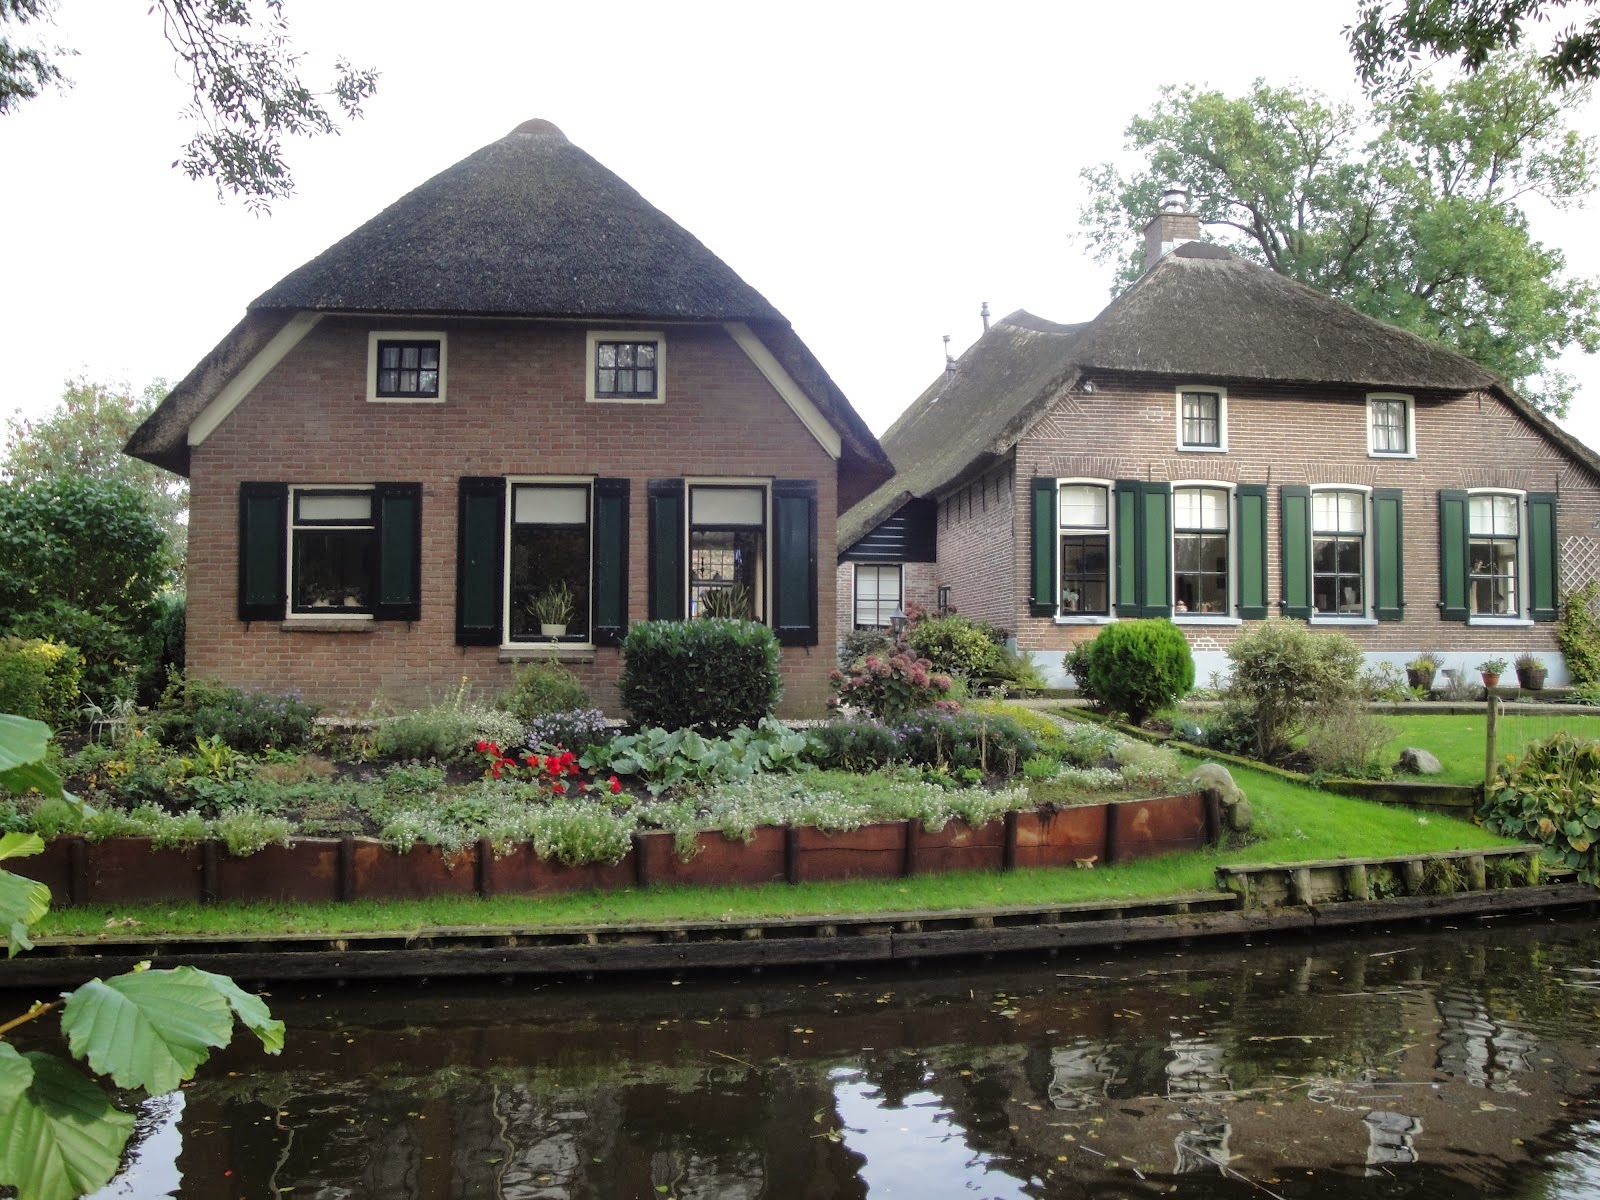  Rumah  Tradisional Belanda  Ingin Ini Itu